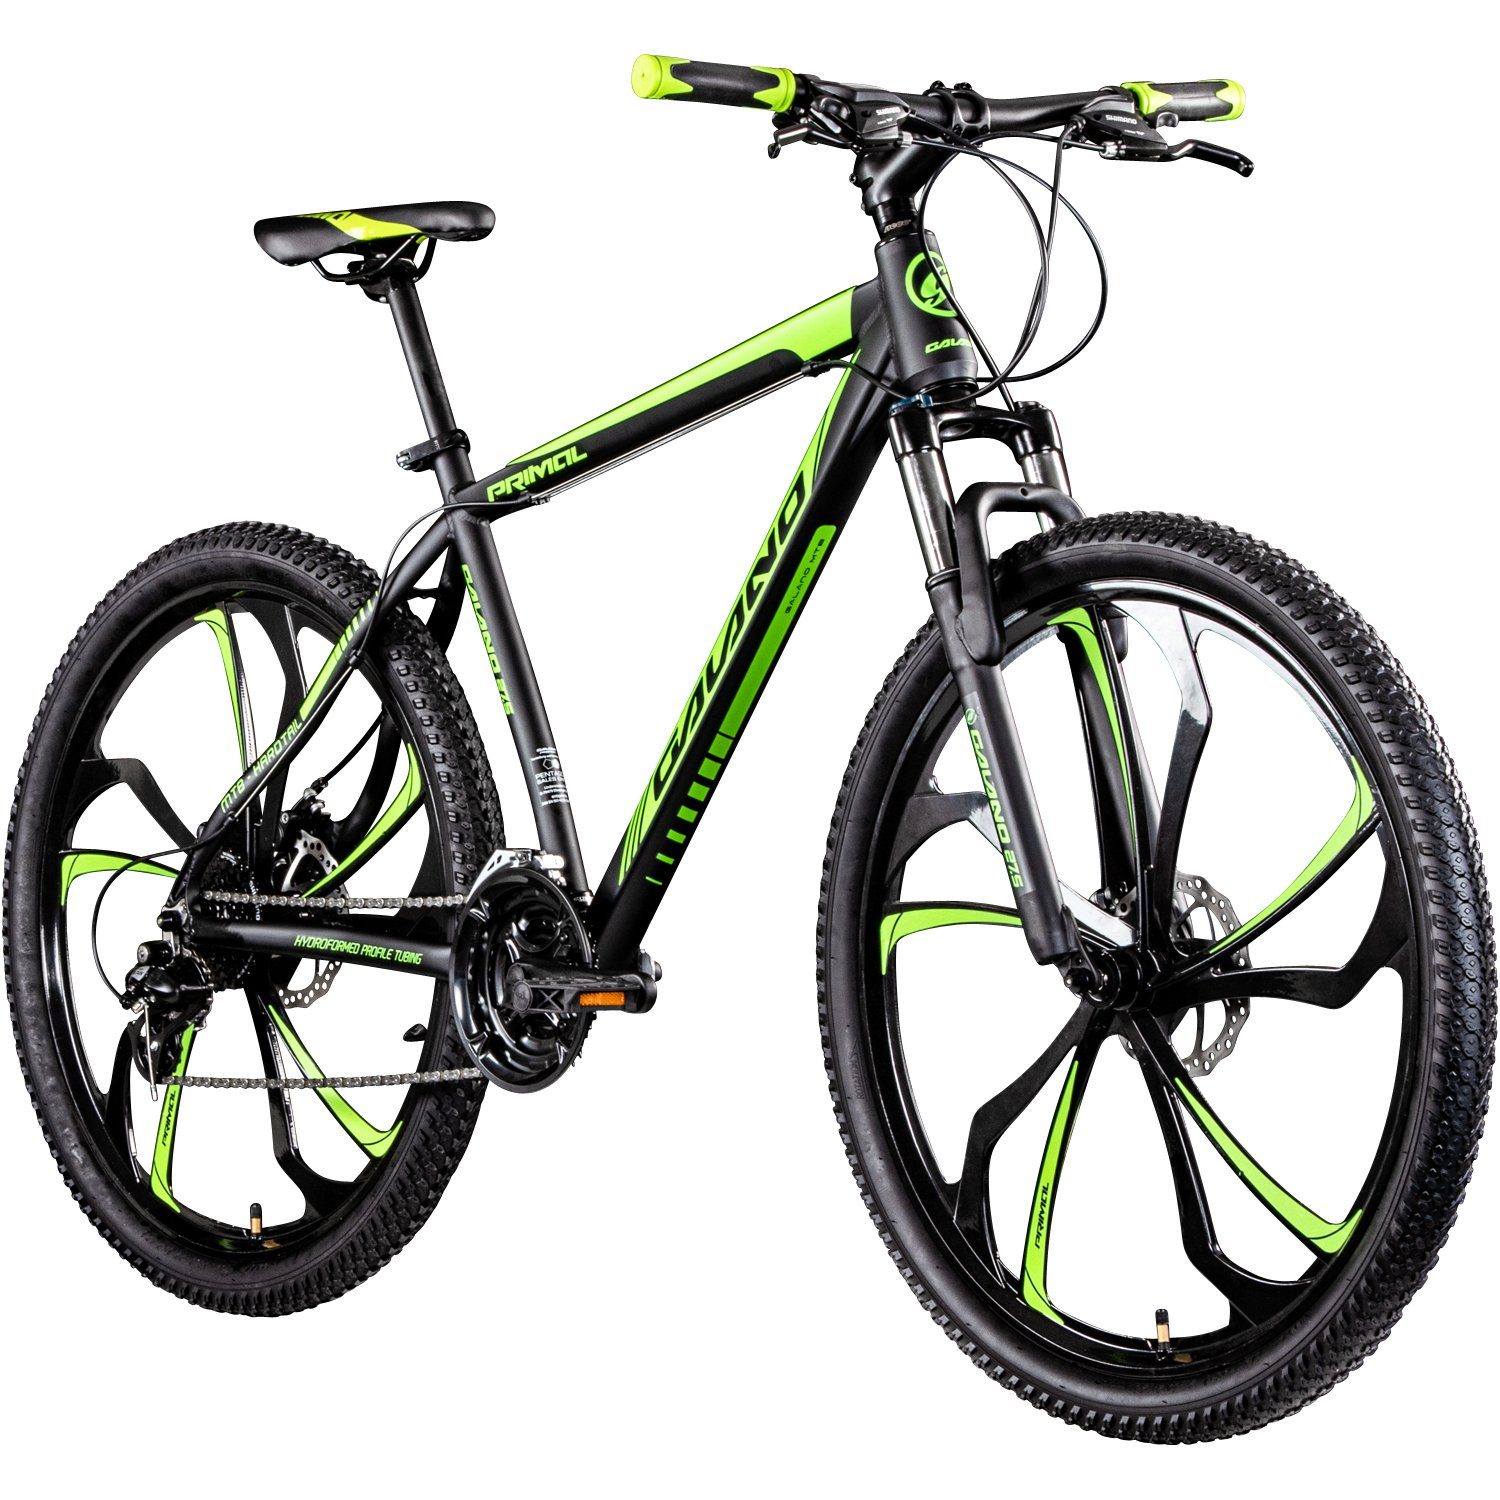 Galano Mountainbike Primal, 24 Gang, Kettenschaltung, Mountainbike Jugendliche und Erwachsene 165-185cm MTB Hardtail Fahrrad schwarz/grün